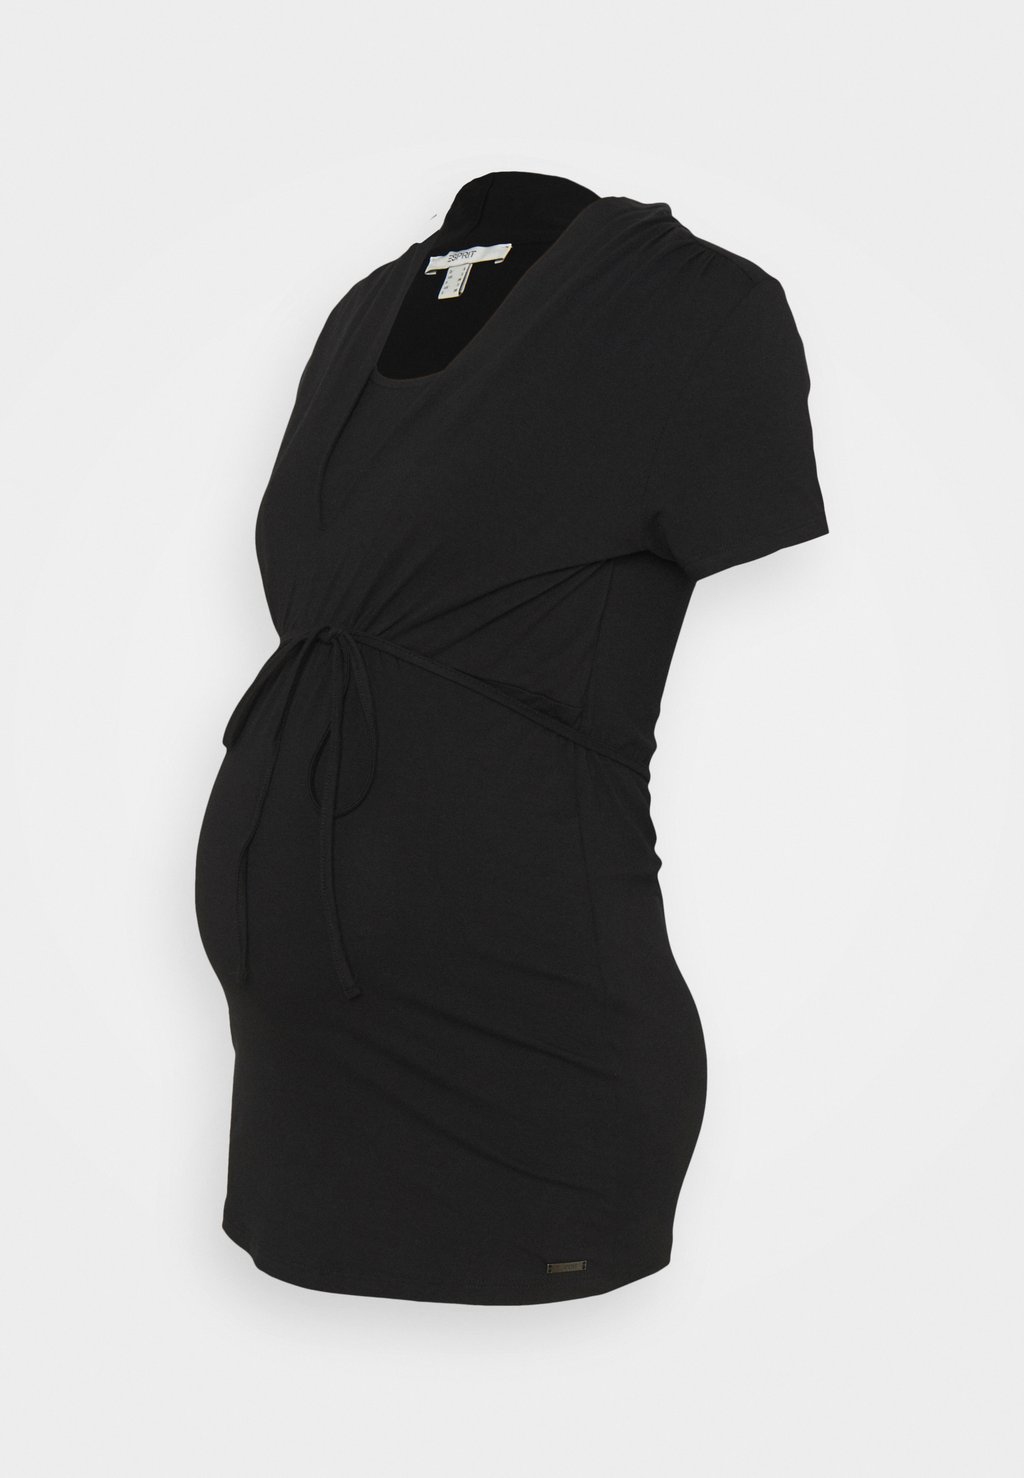 Базовая футболка Esprit, черный юбка esprit базовая 42 размер